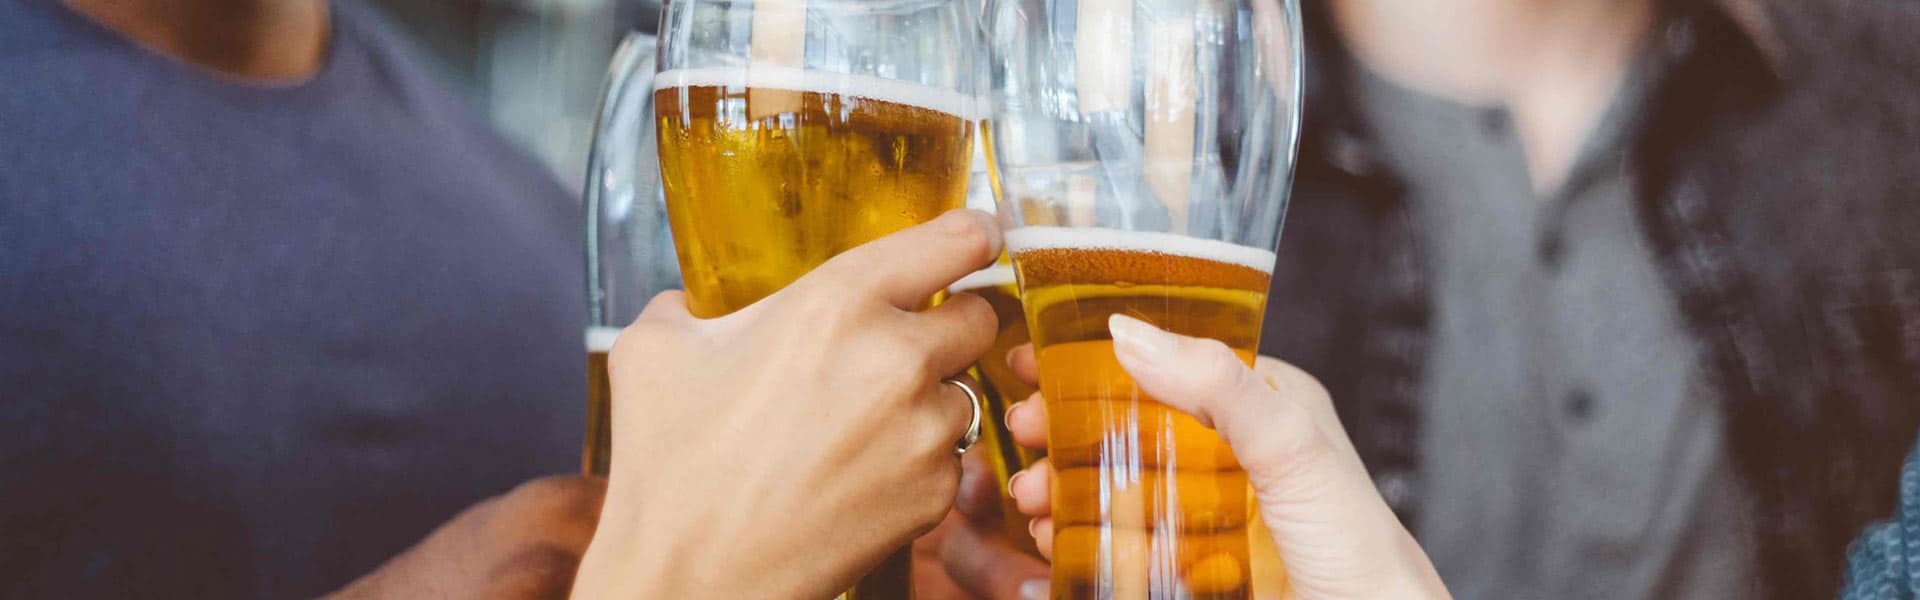 Craft Beer Drinkers Get a Taste of Industry 4.0 Intelligence